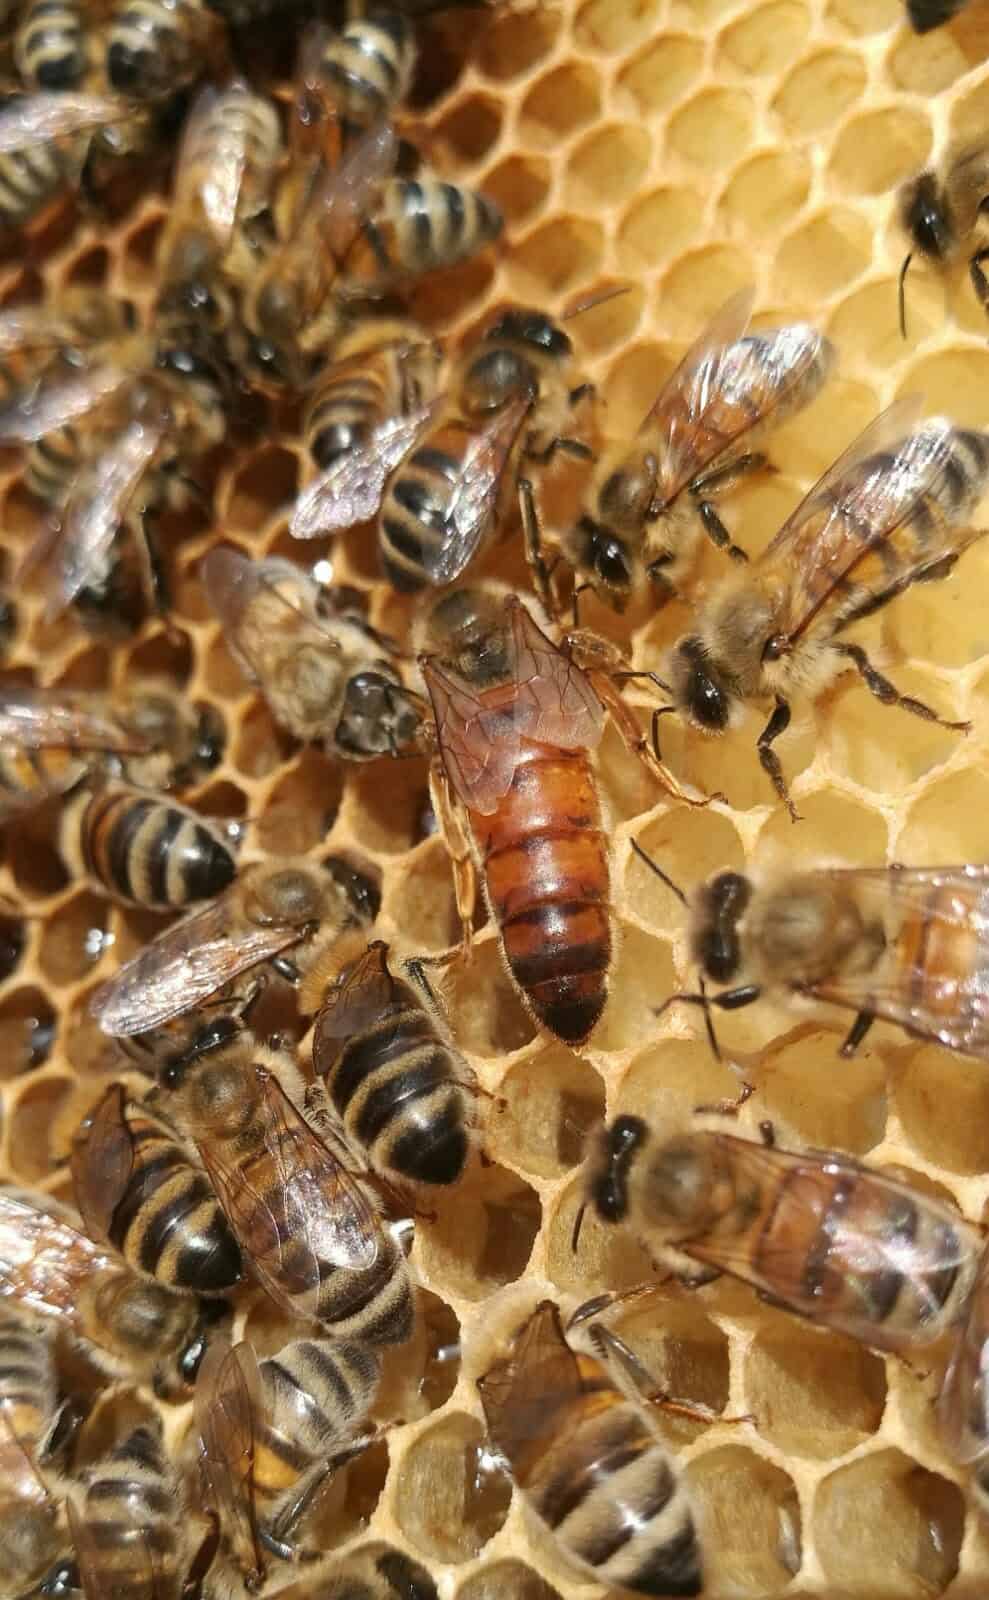 Comment L’abeille Devient Reine Naturabee